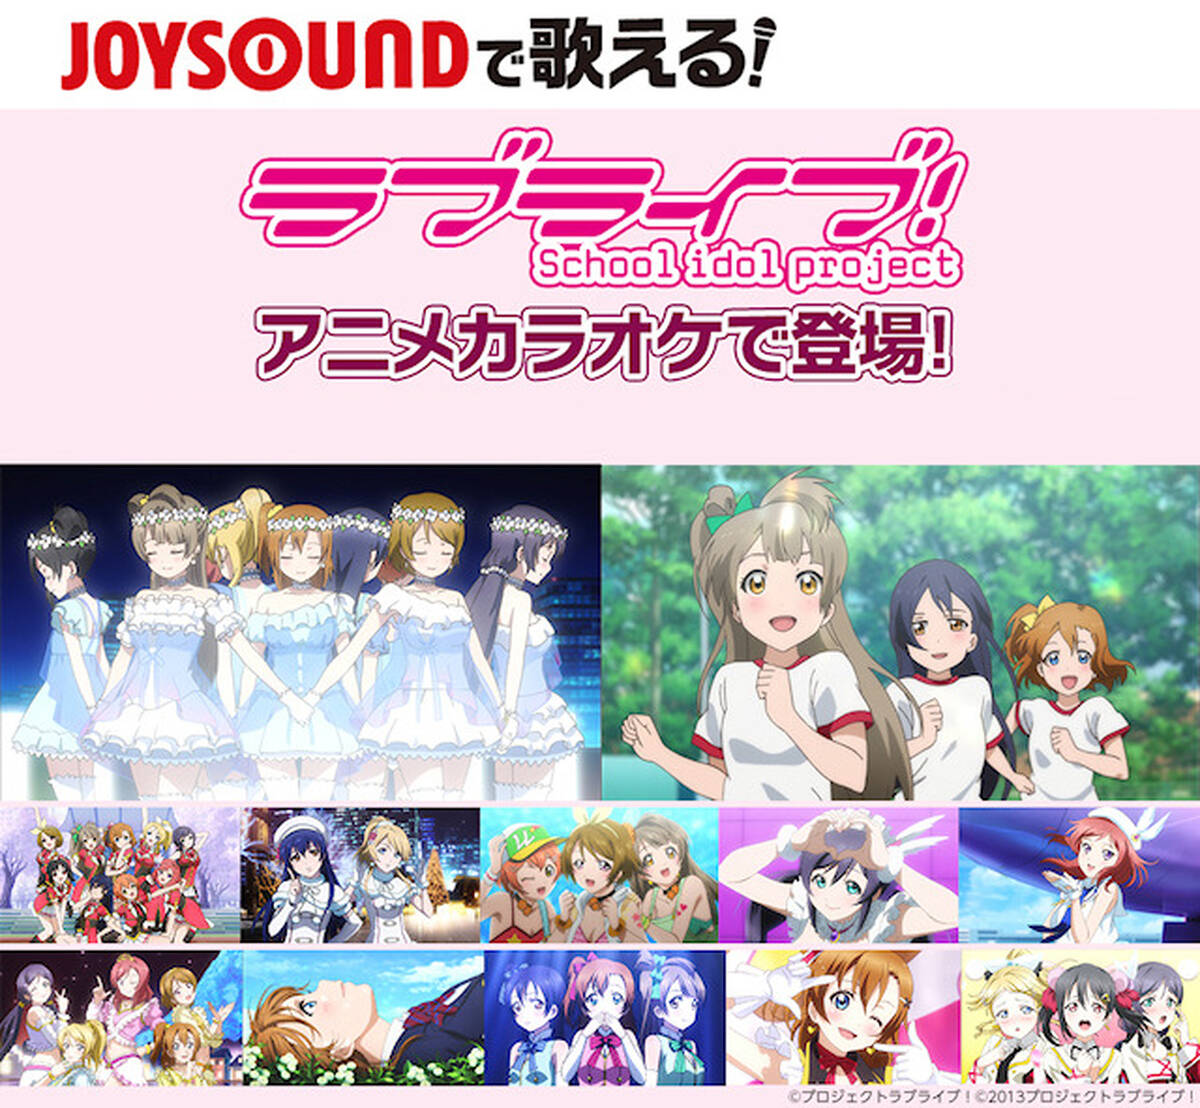 カラオケ Joysound Tvアニメ ラブライブ のアニメ映像カラオケに2曲を追加 これで全12曲に アキバ総研